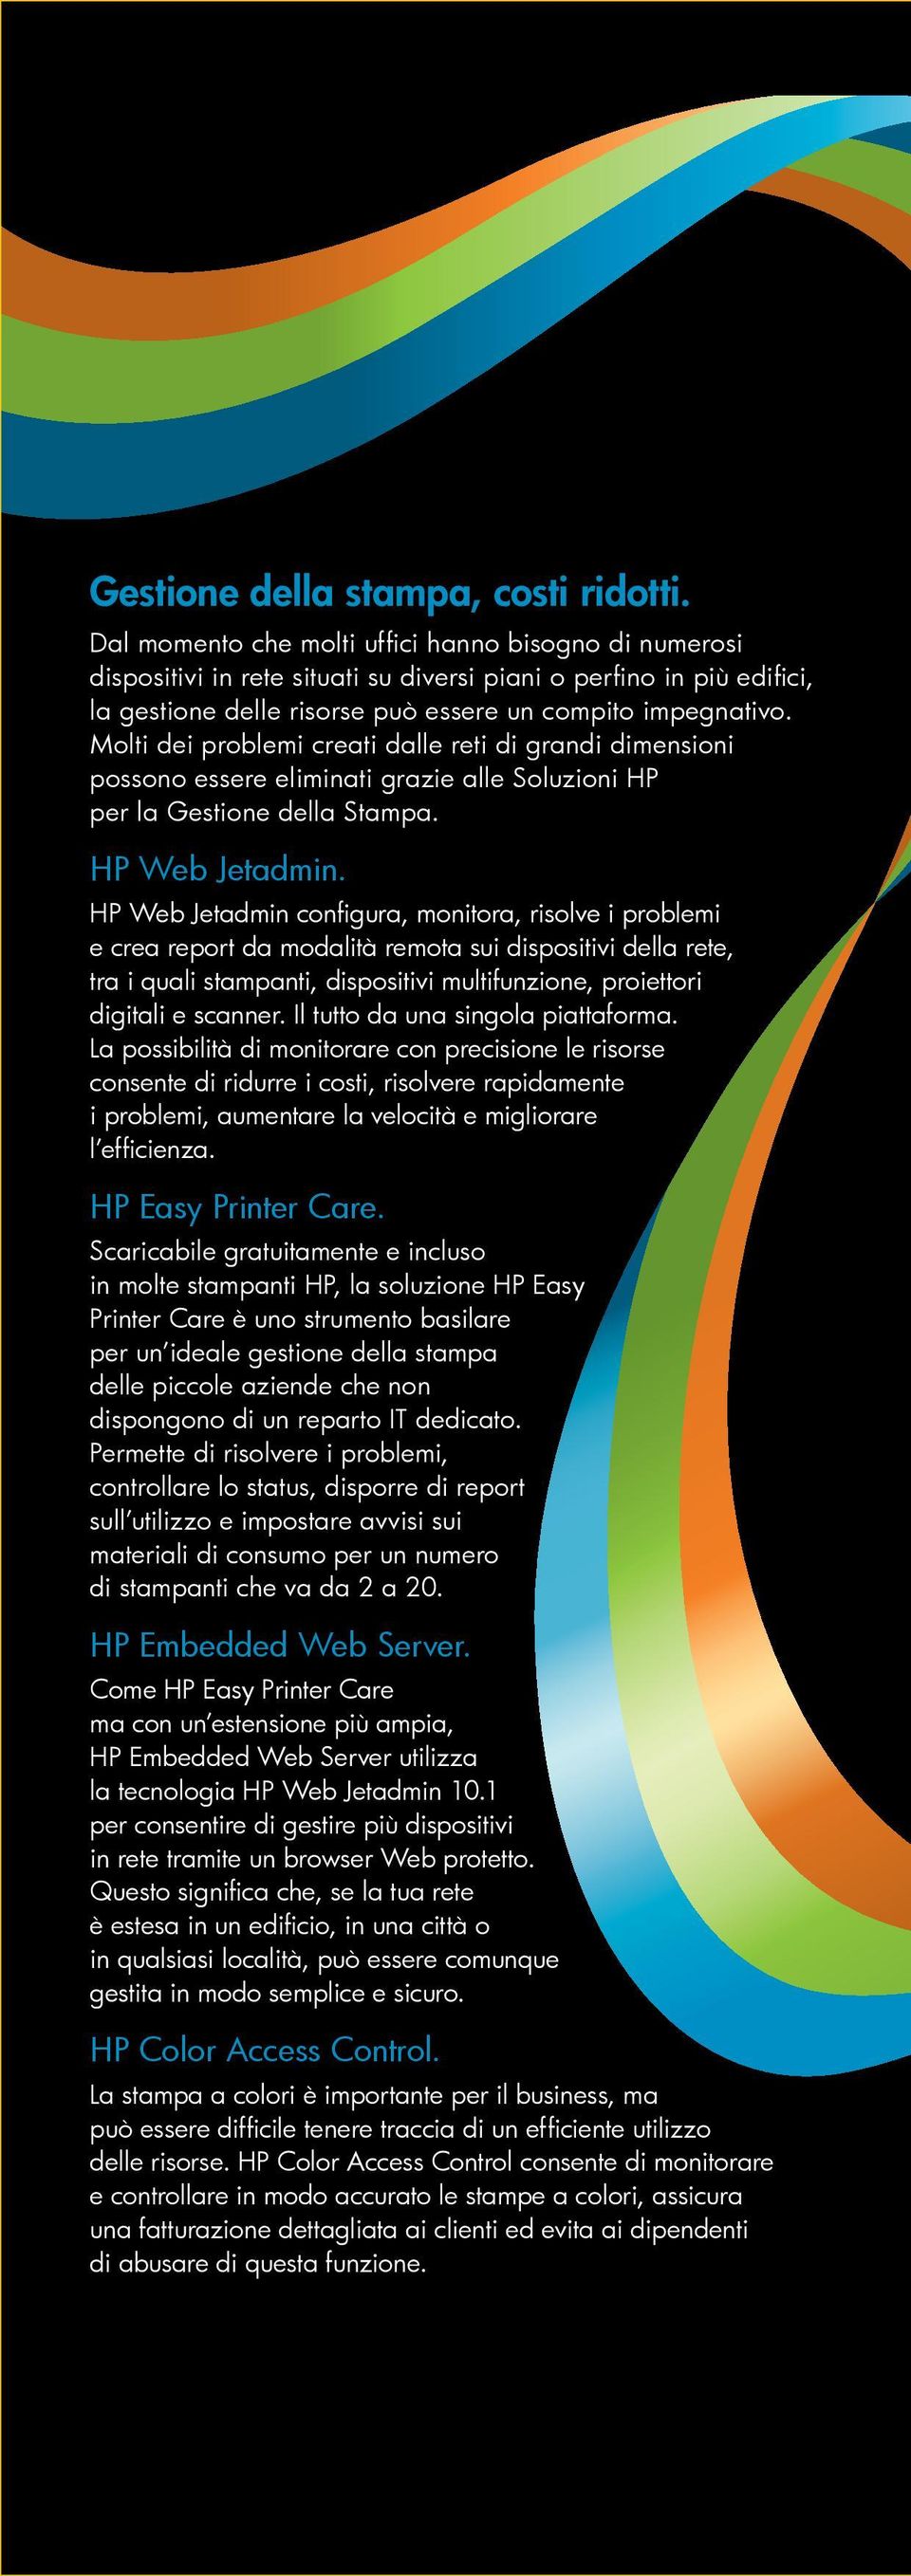 Molti dei problemi creati dalle reti di grandi dimensioni possono essere eliminati grazie alle Soluzioni HP per la Gestione della Stampa. HP Web Jetadmin.